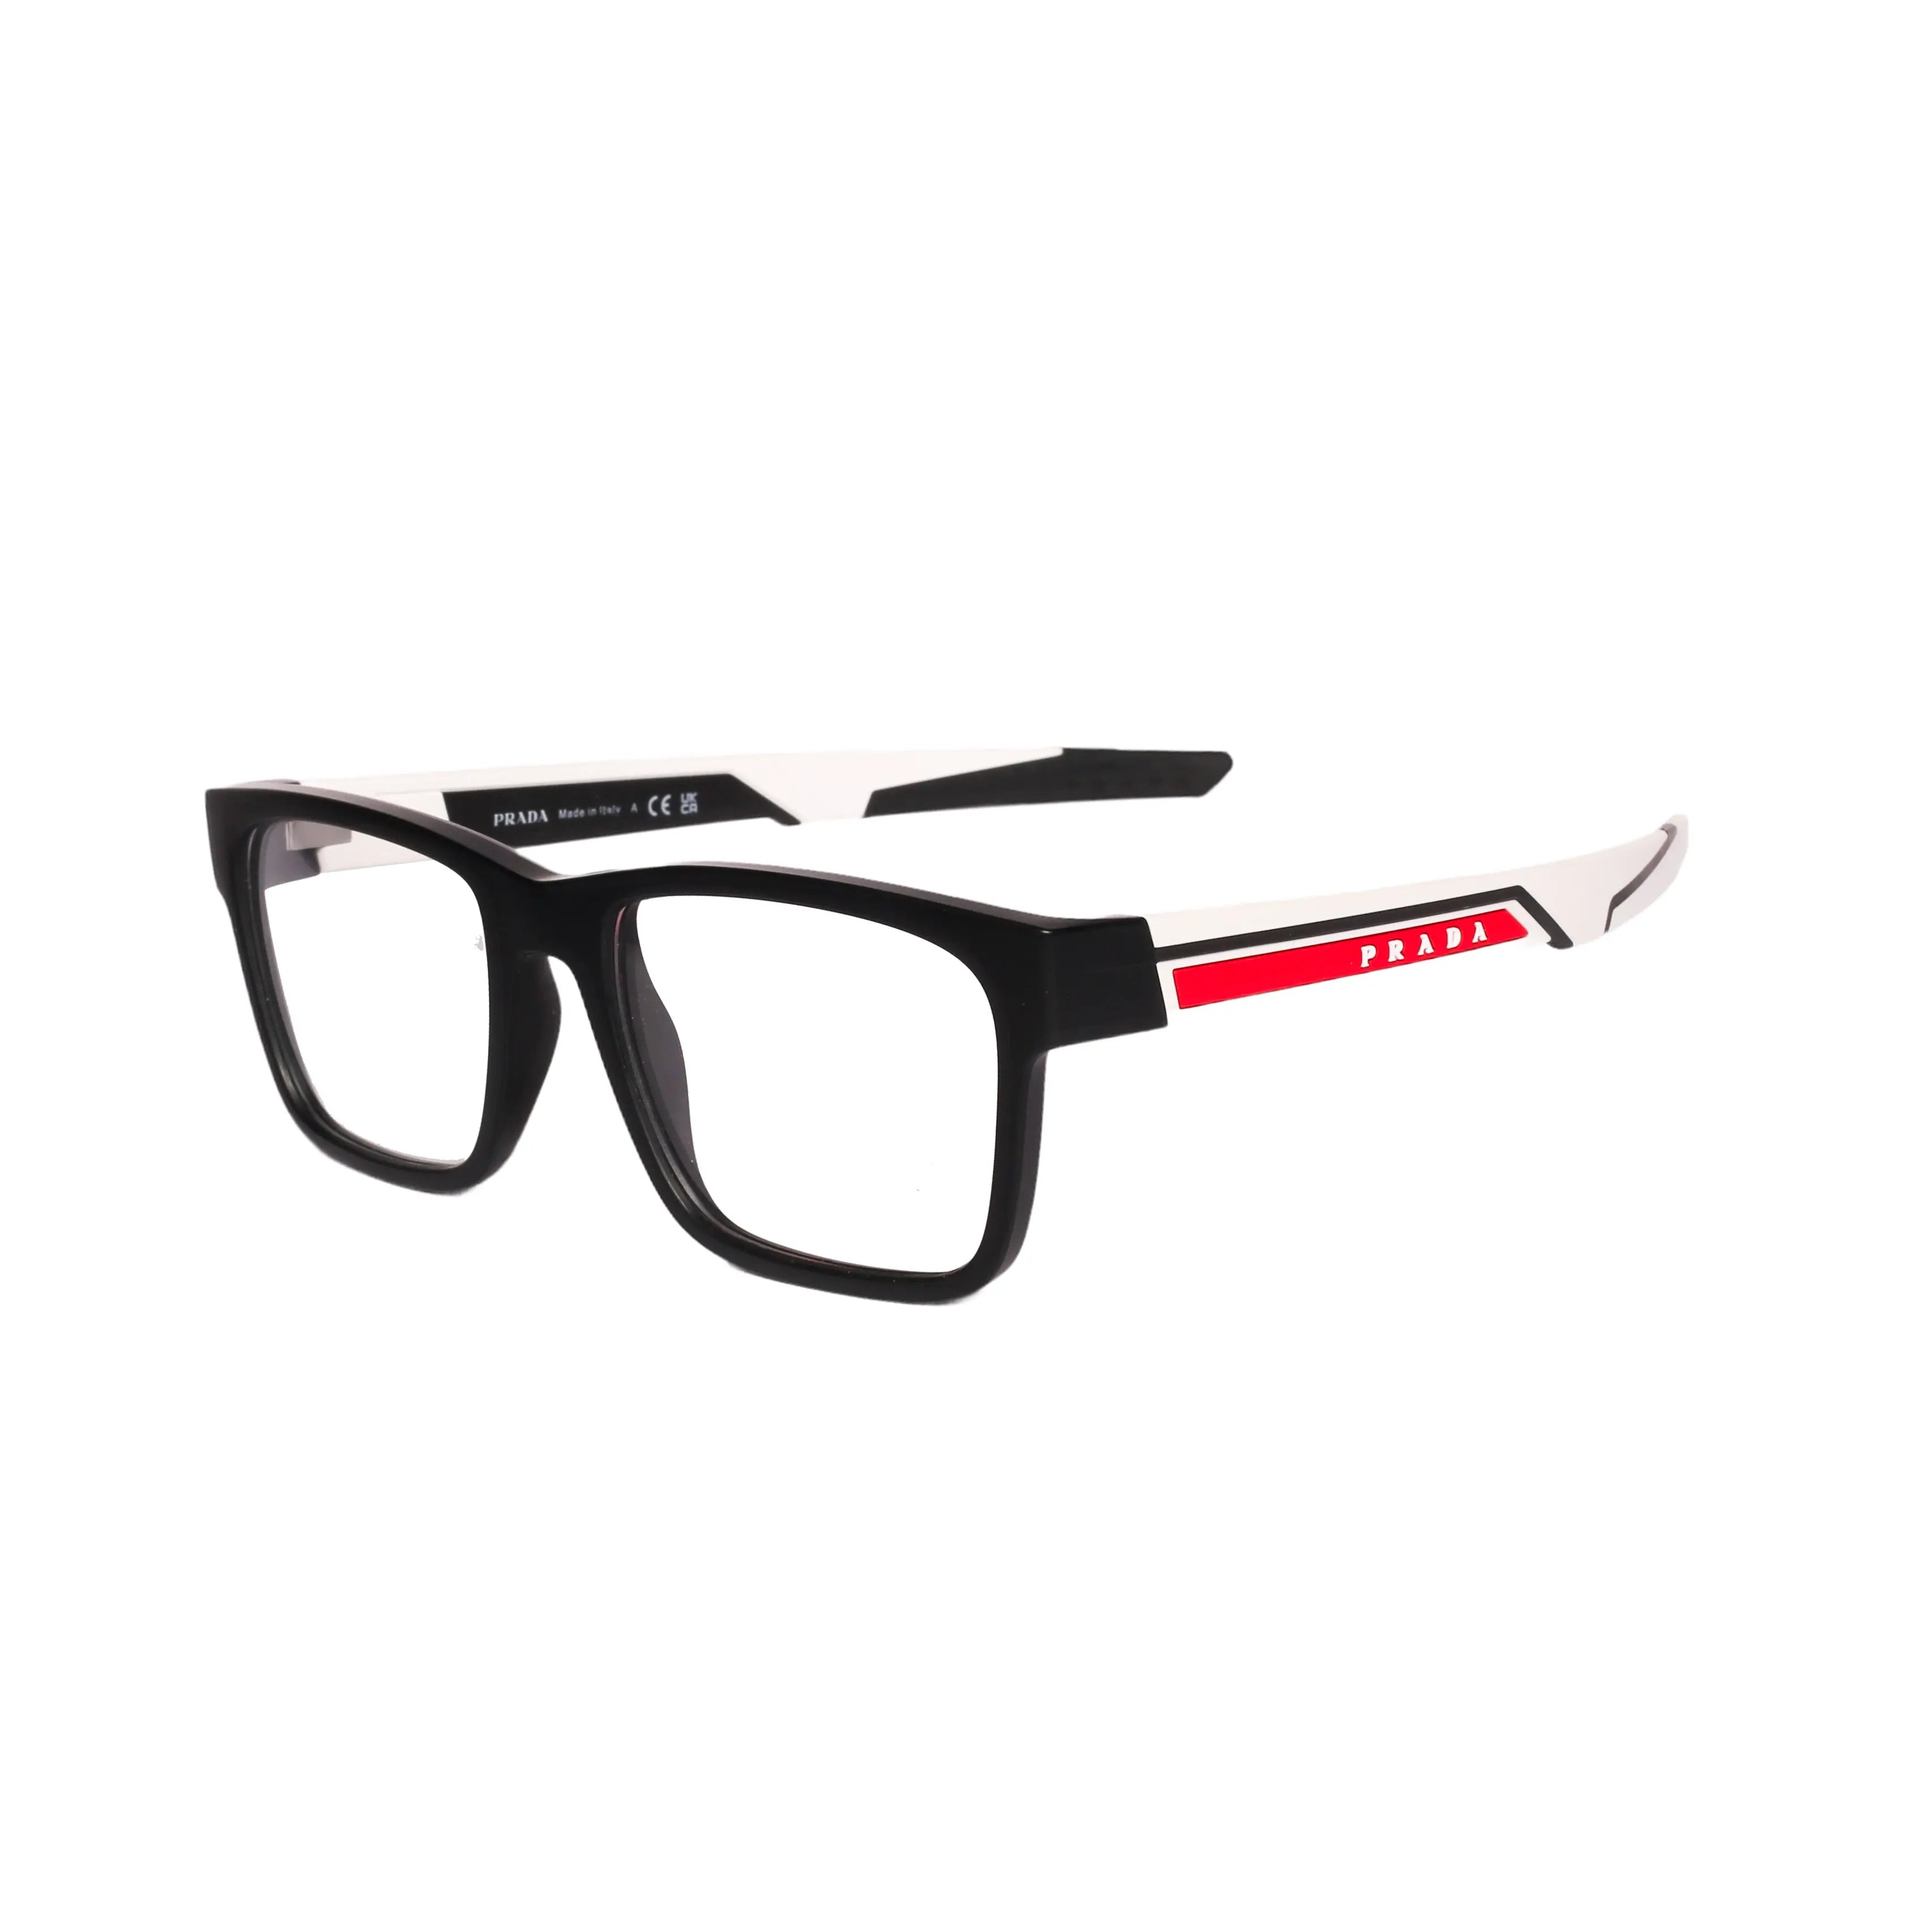 Prada-0PS02PV-55-14Q-1O1 Eyeglasses - Premium Eyeglasses from Prada - Just Rs. 17890! Shop now at Laxmi Opticians